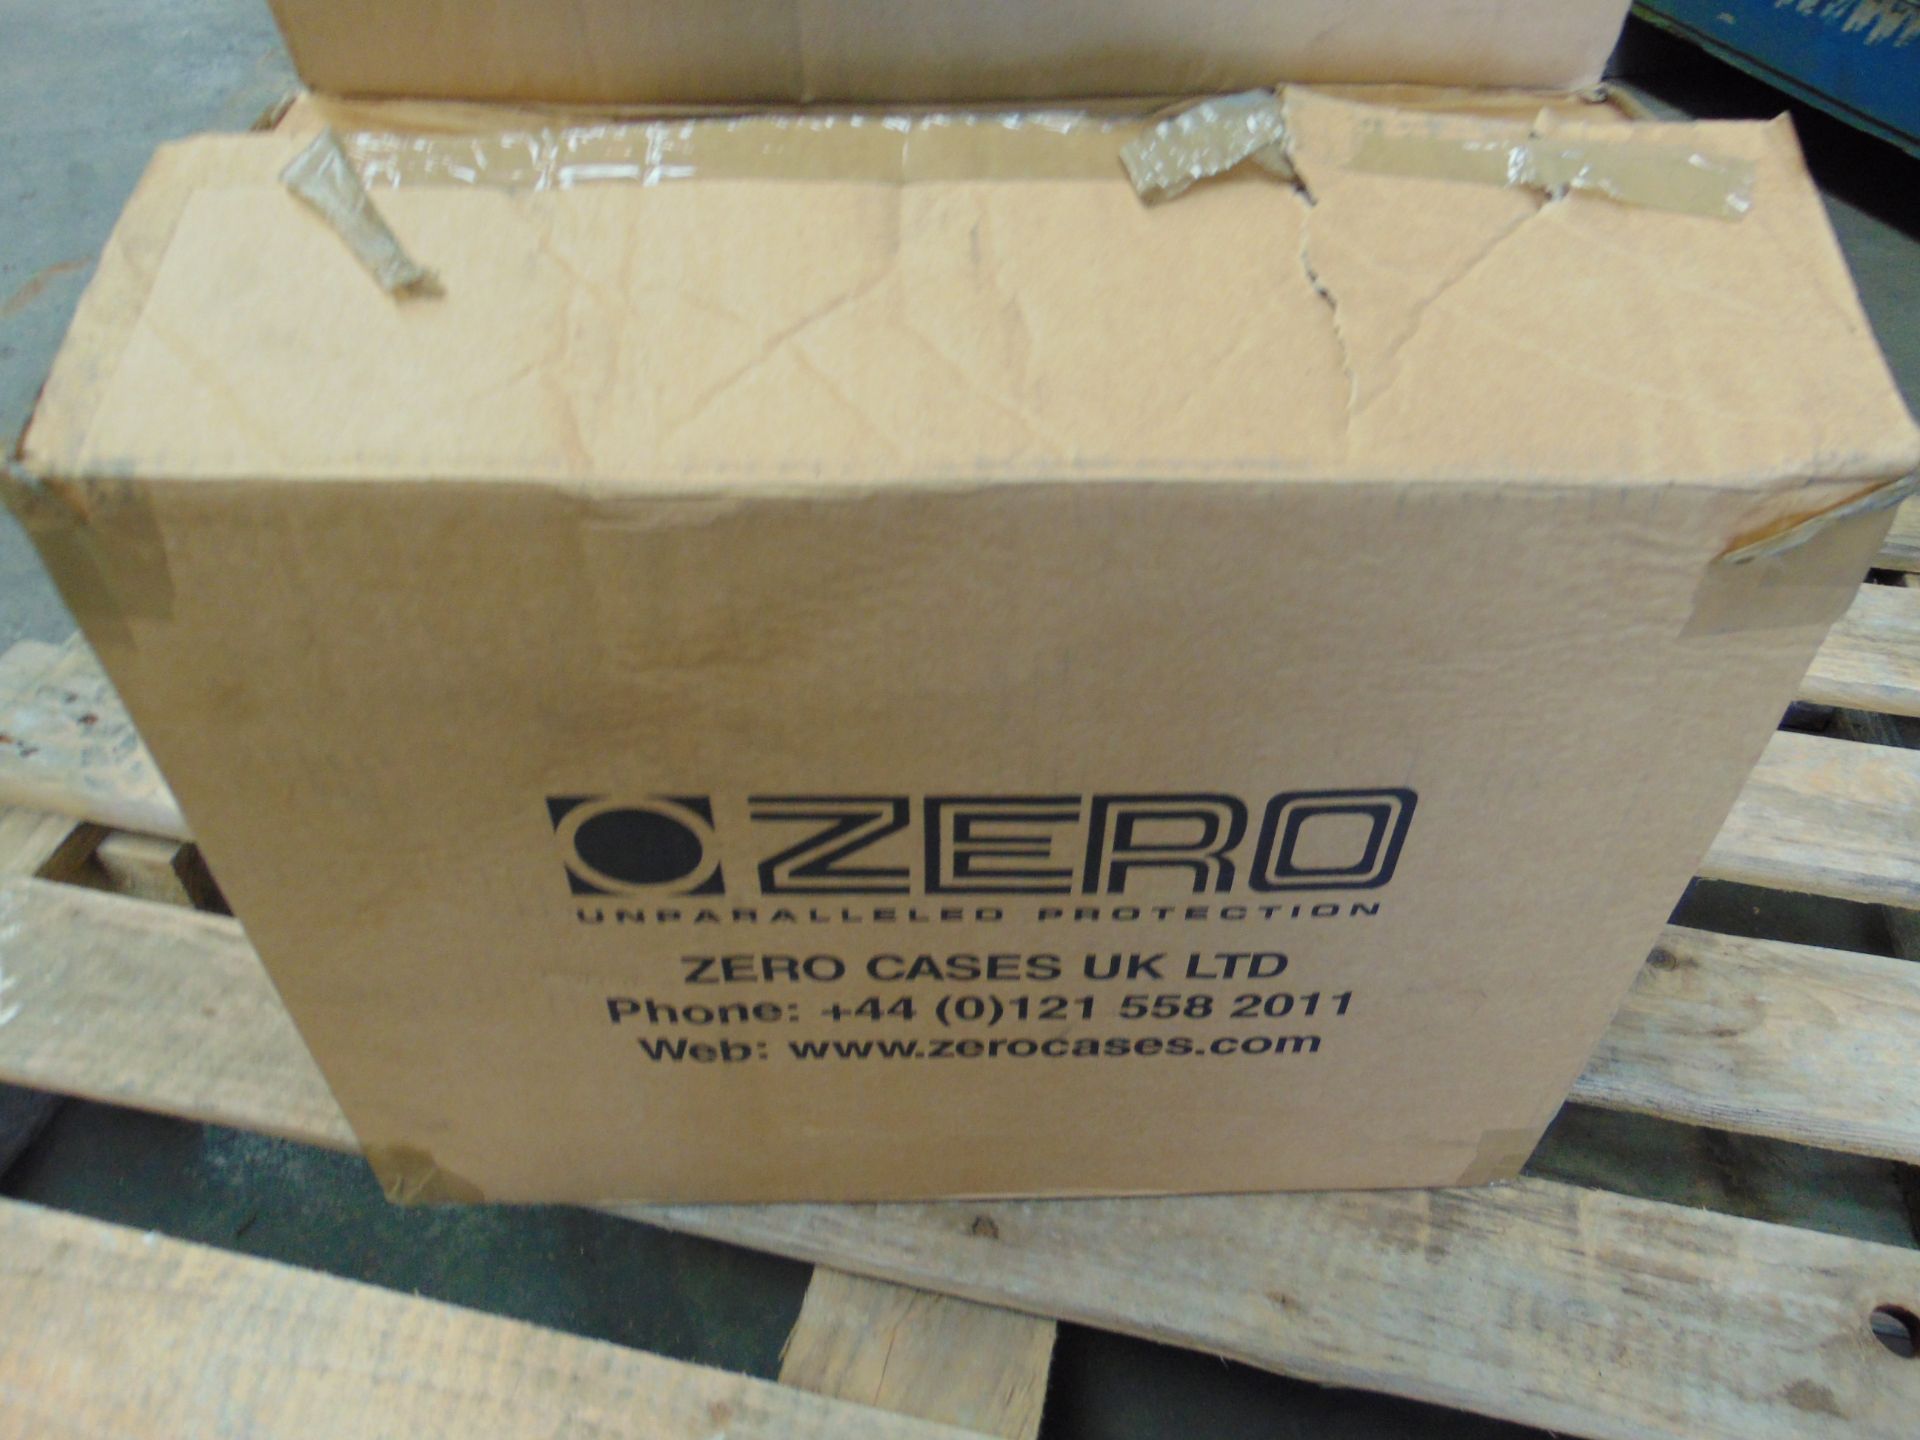 Zero Cases High Quality 40 x 30 x 22 cms lockable aluminium case - Image 5 of 5